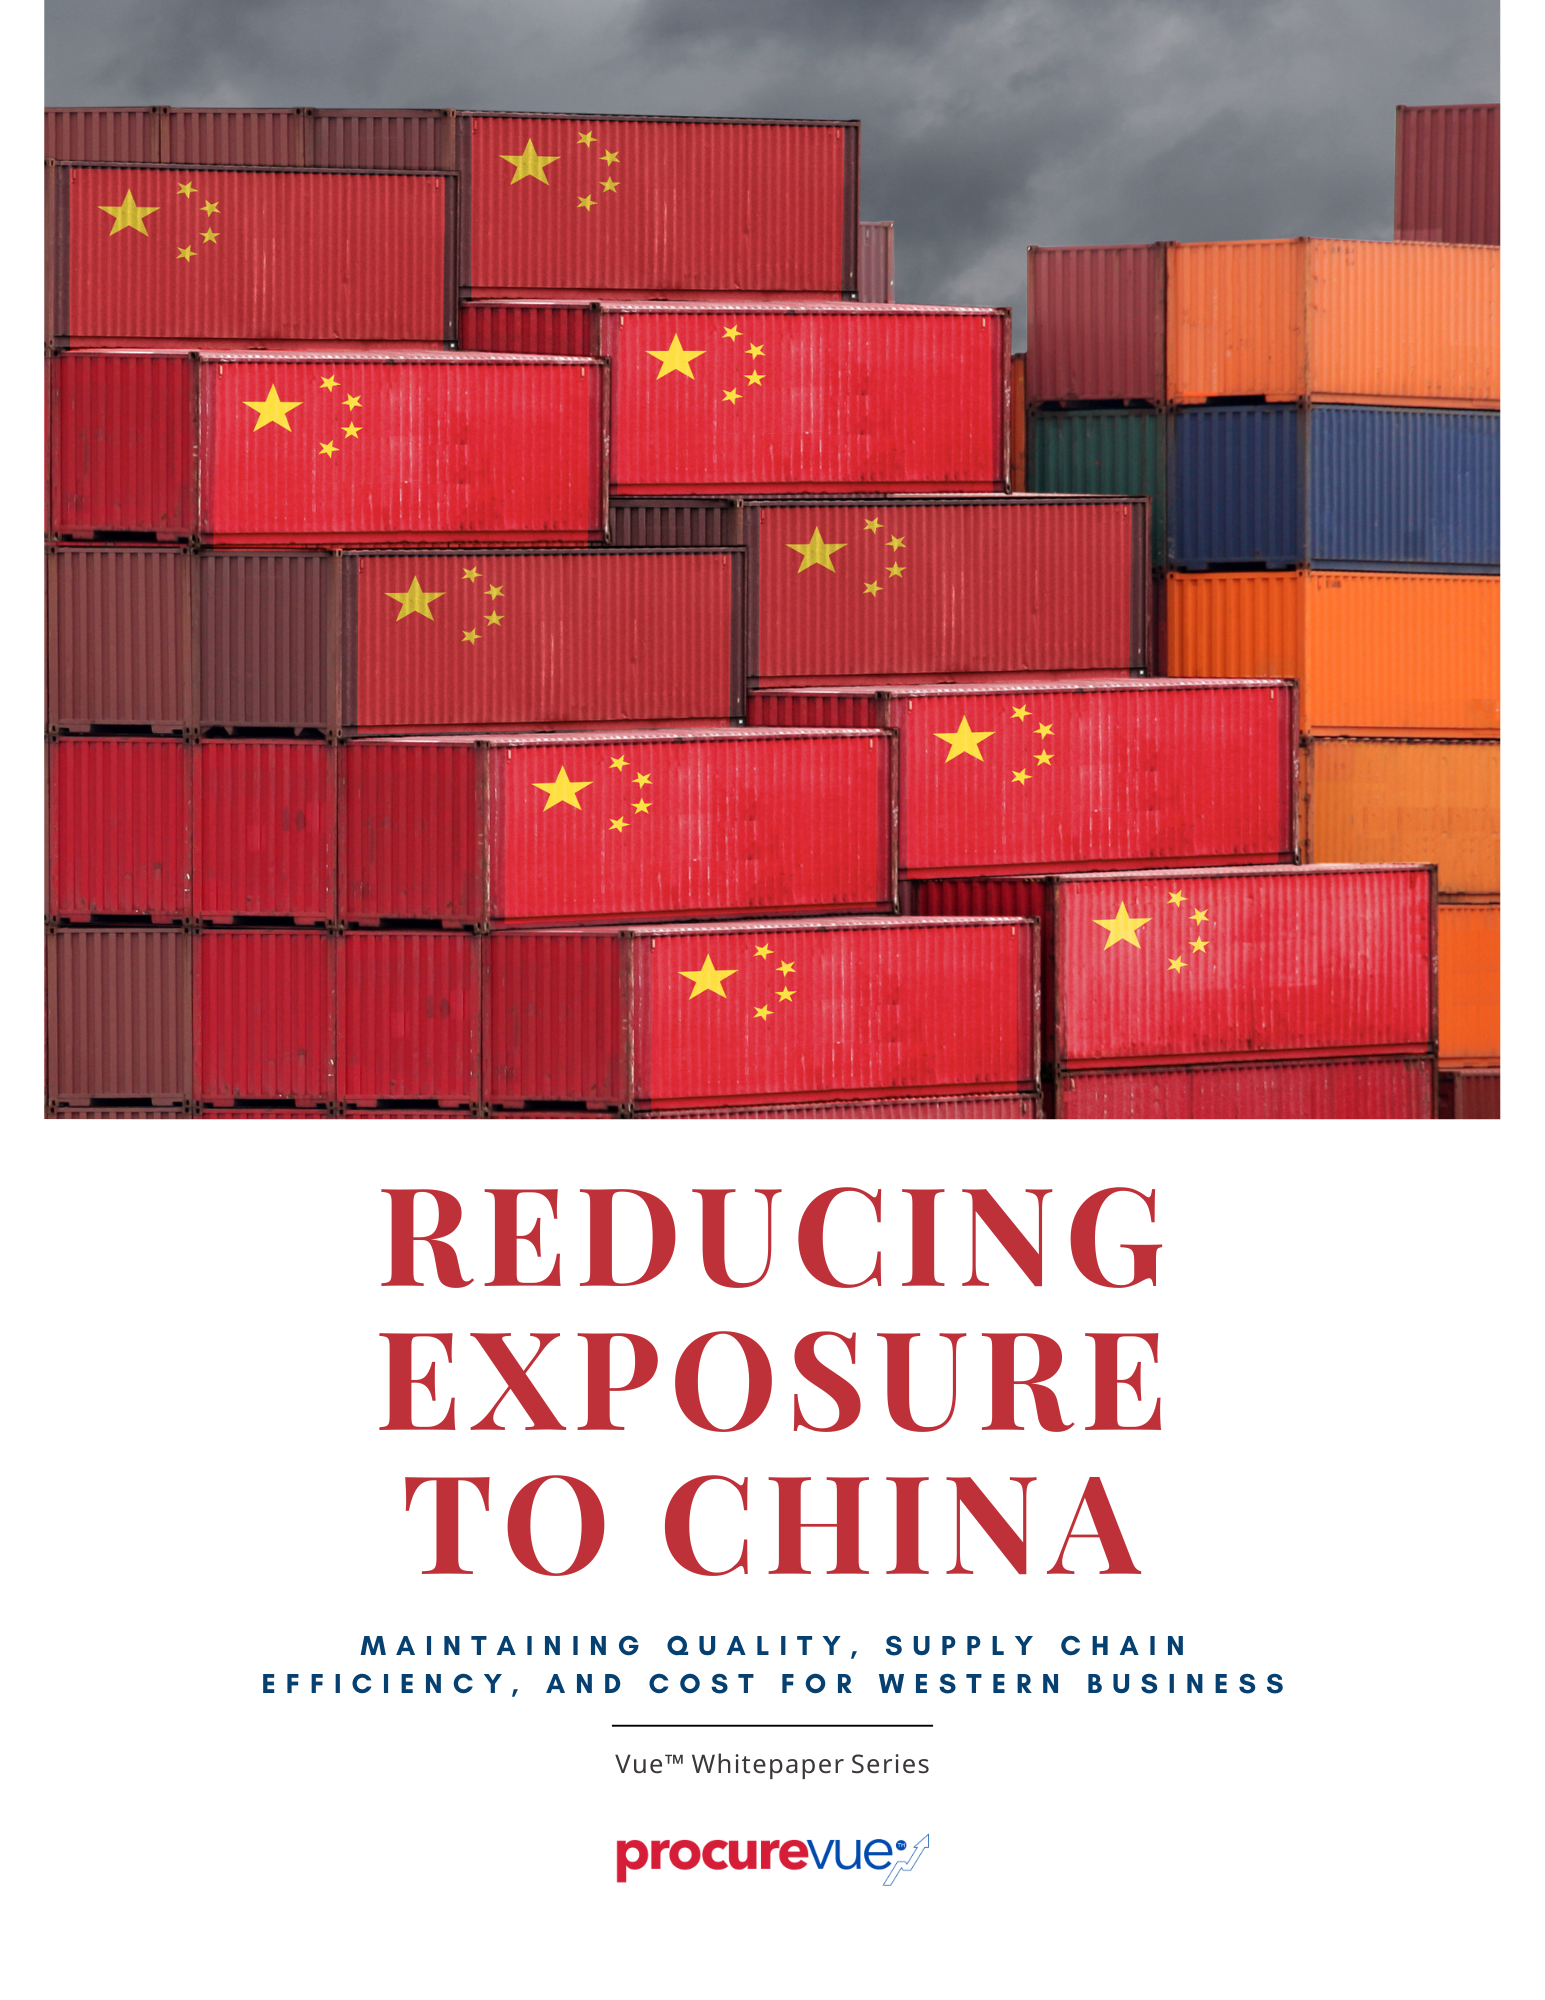 Reducing Exposure to China - VueTM Whitepaper Series